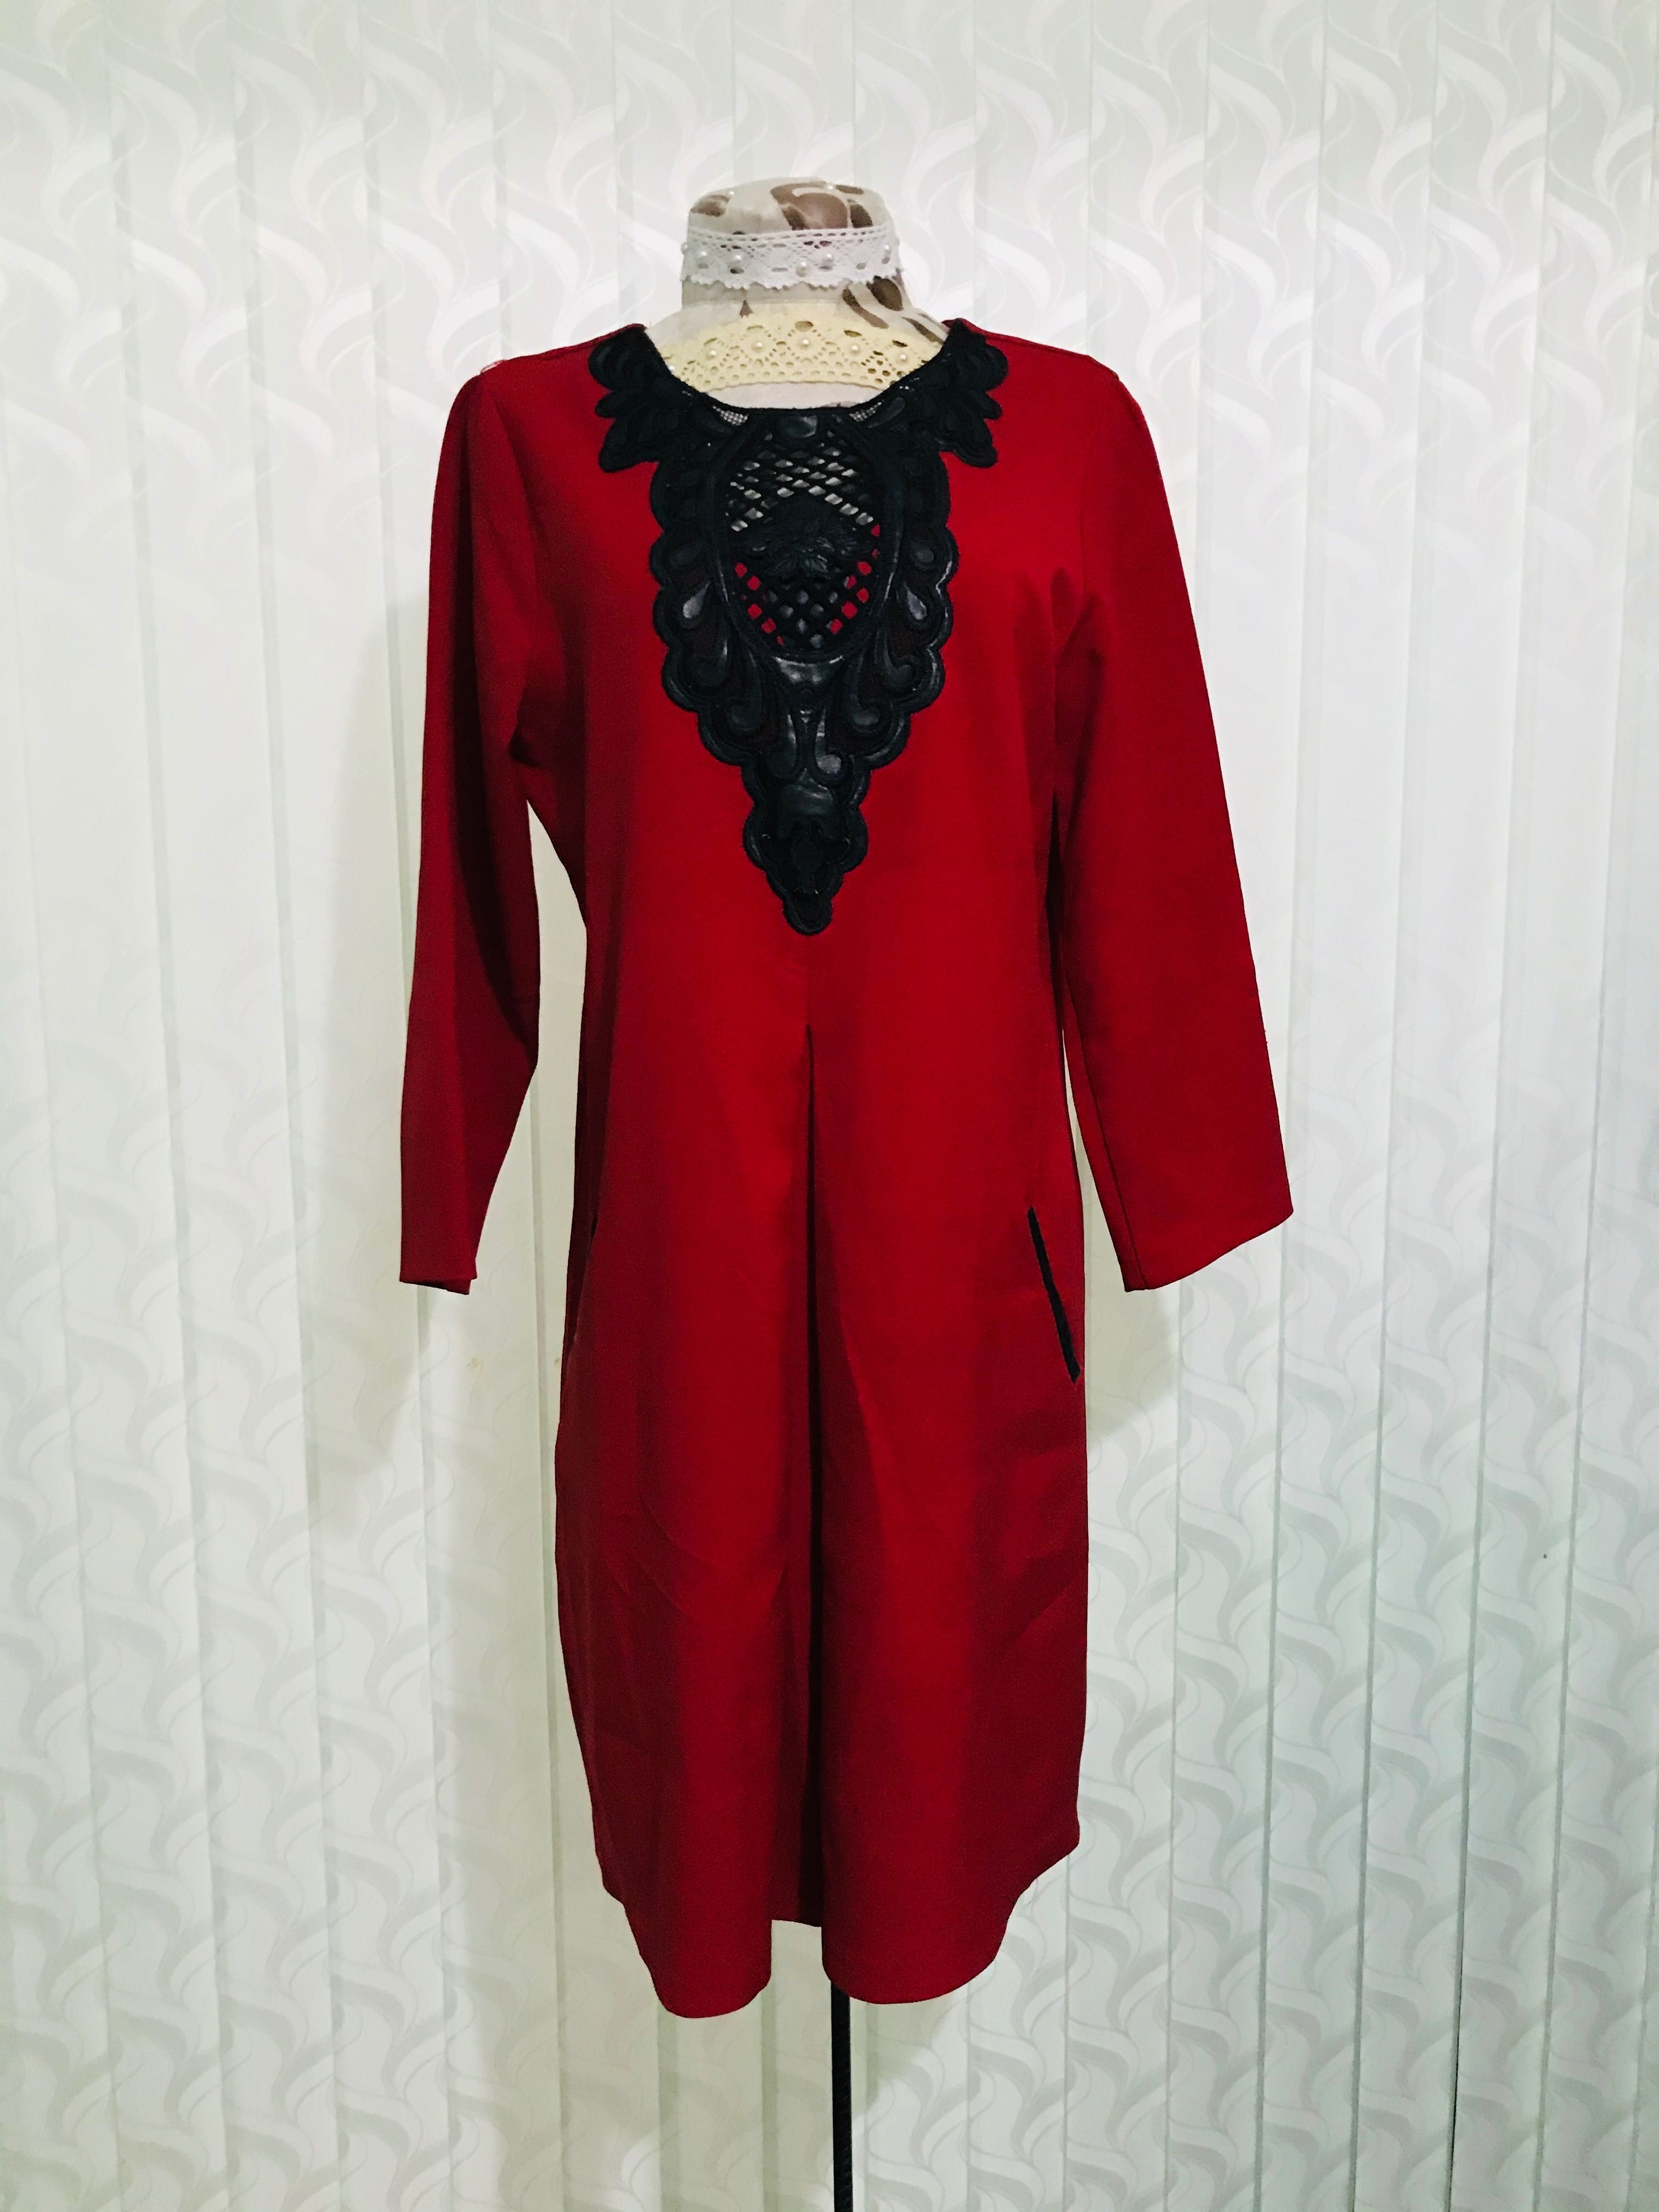 Платья красная размер 48, для беременном тоже подходить. Qizil ko’ylak